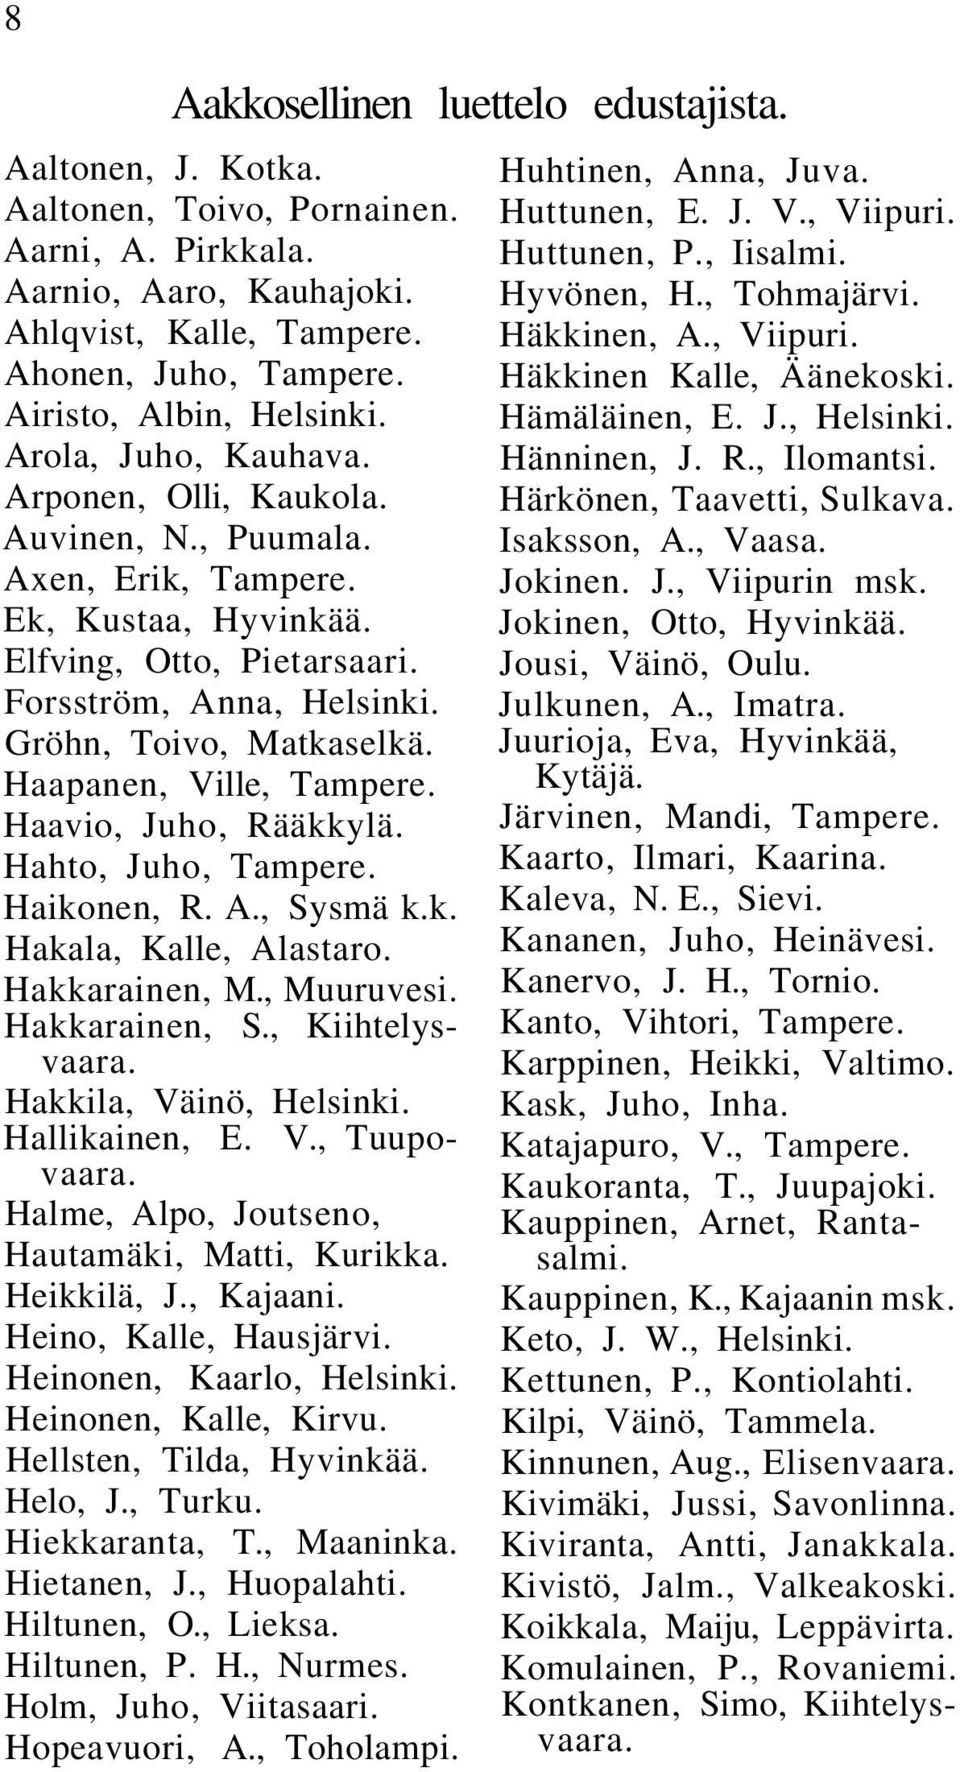 Gröhn, Toivo, Matkaselkä. Haapanen, Ville, Tampere. Haavio, Juho, Rääkkylä. Hahto, Juho, Tampere. Haikonen, R. A., Sysmä k.k. Hakala, Kalle, Alastaro. Hakkarainen, M., Muuruvesi. Hakkarainen, S.